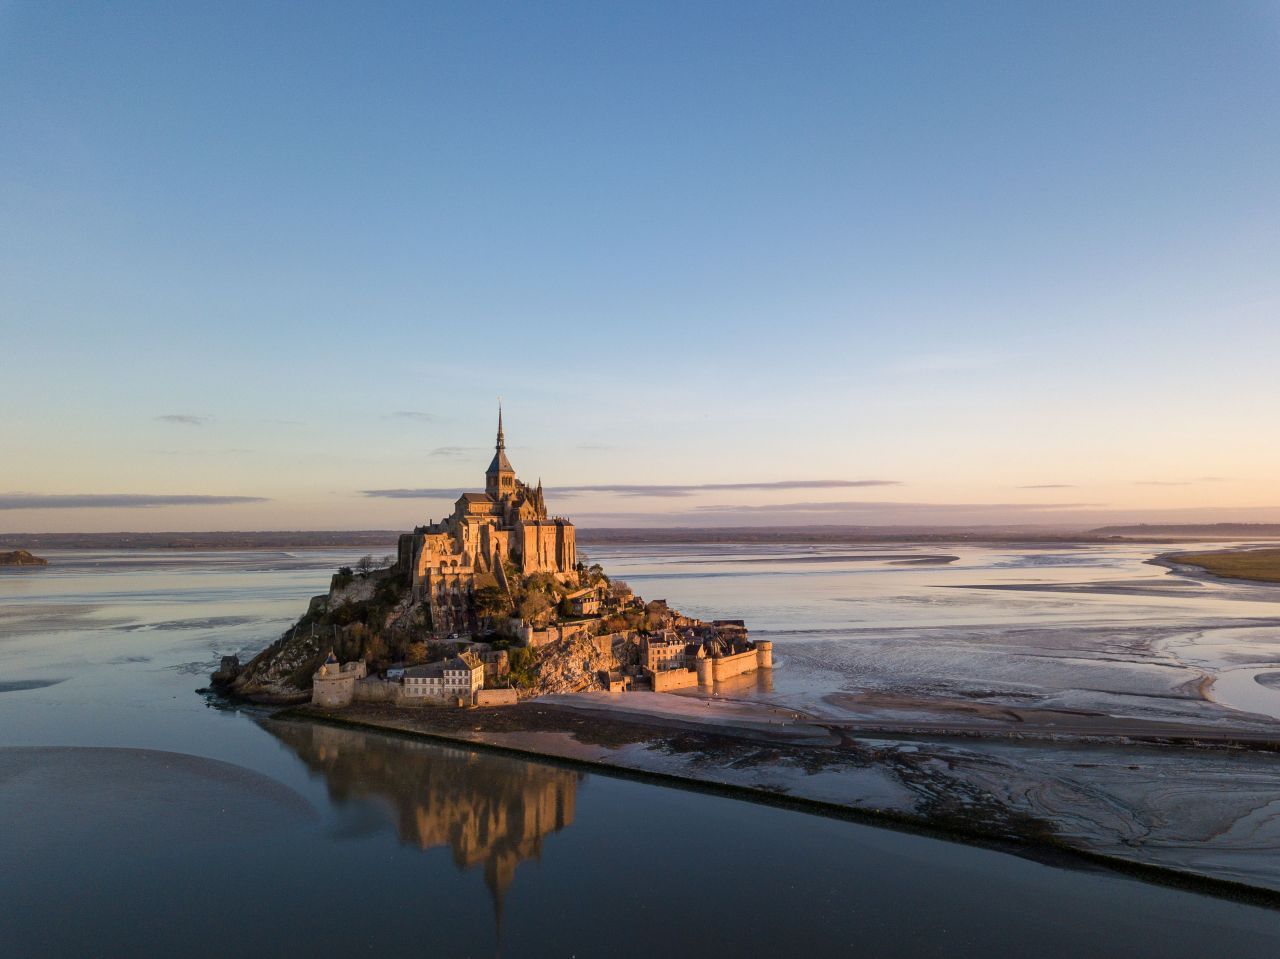 Der Mont Saint-Michel in der Normandie ist eine kleine Insel, die bei Flut von Wasser umgeben ist und bei Ebbe auf einem sandigen Untergrund steht. Die Gezeiten hier ändern die gesamte Umgebung und bietet ein beeindruckendes Schauspiel.